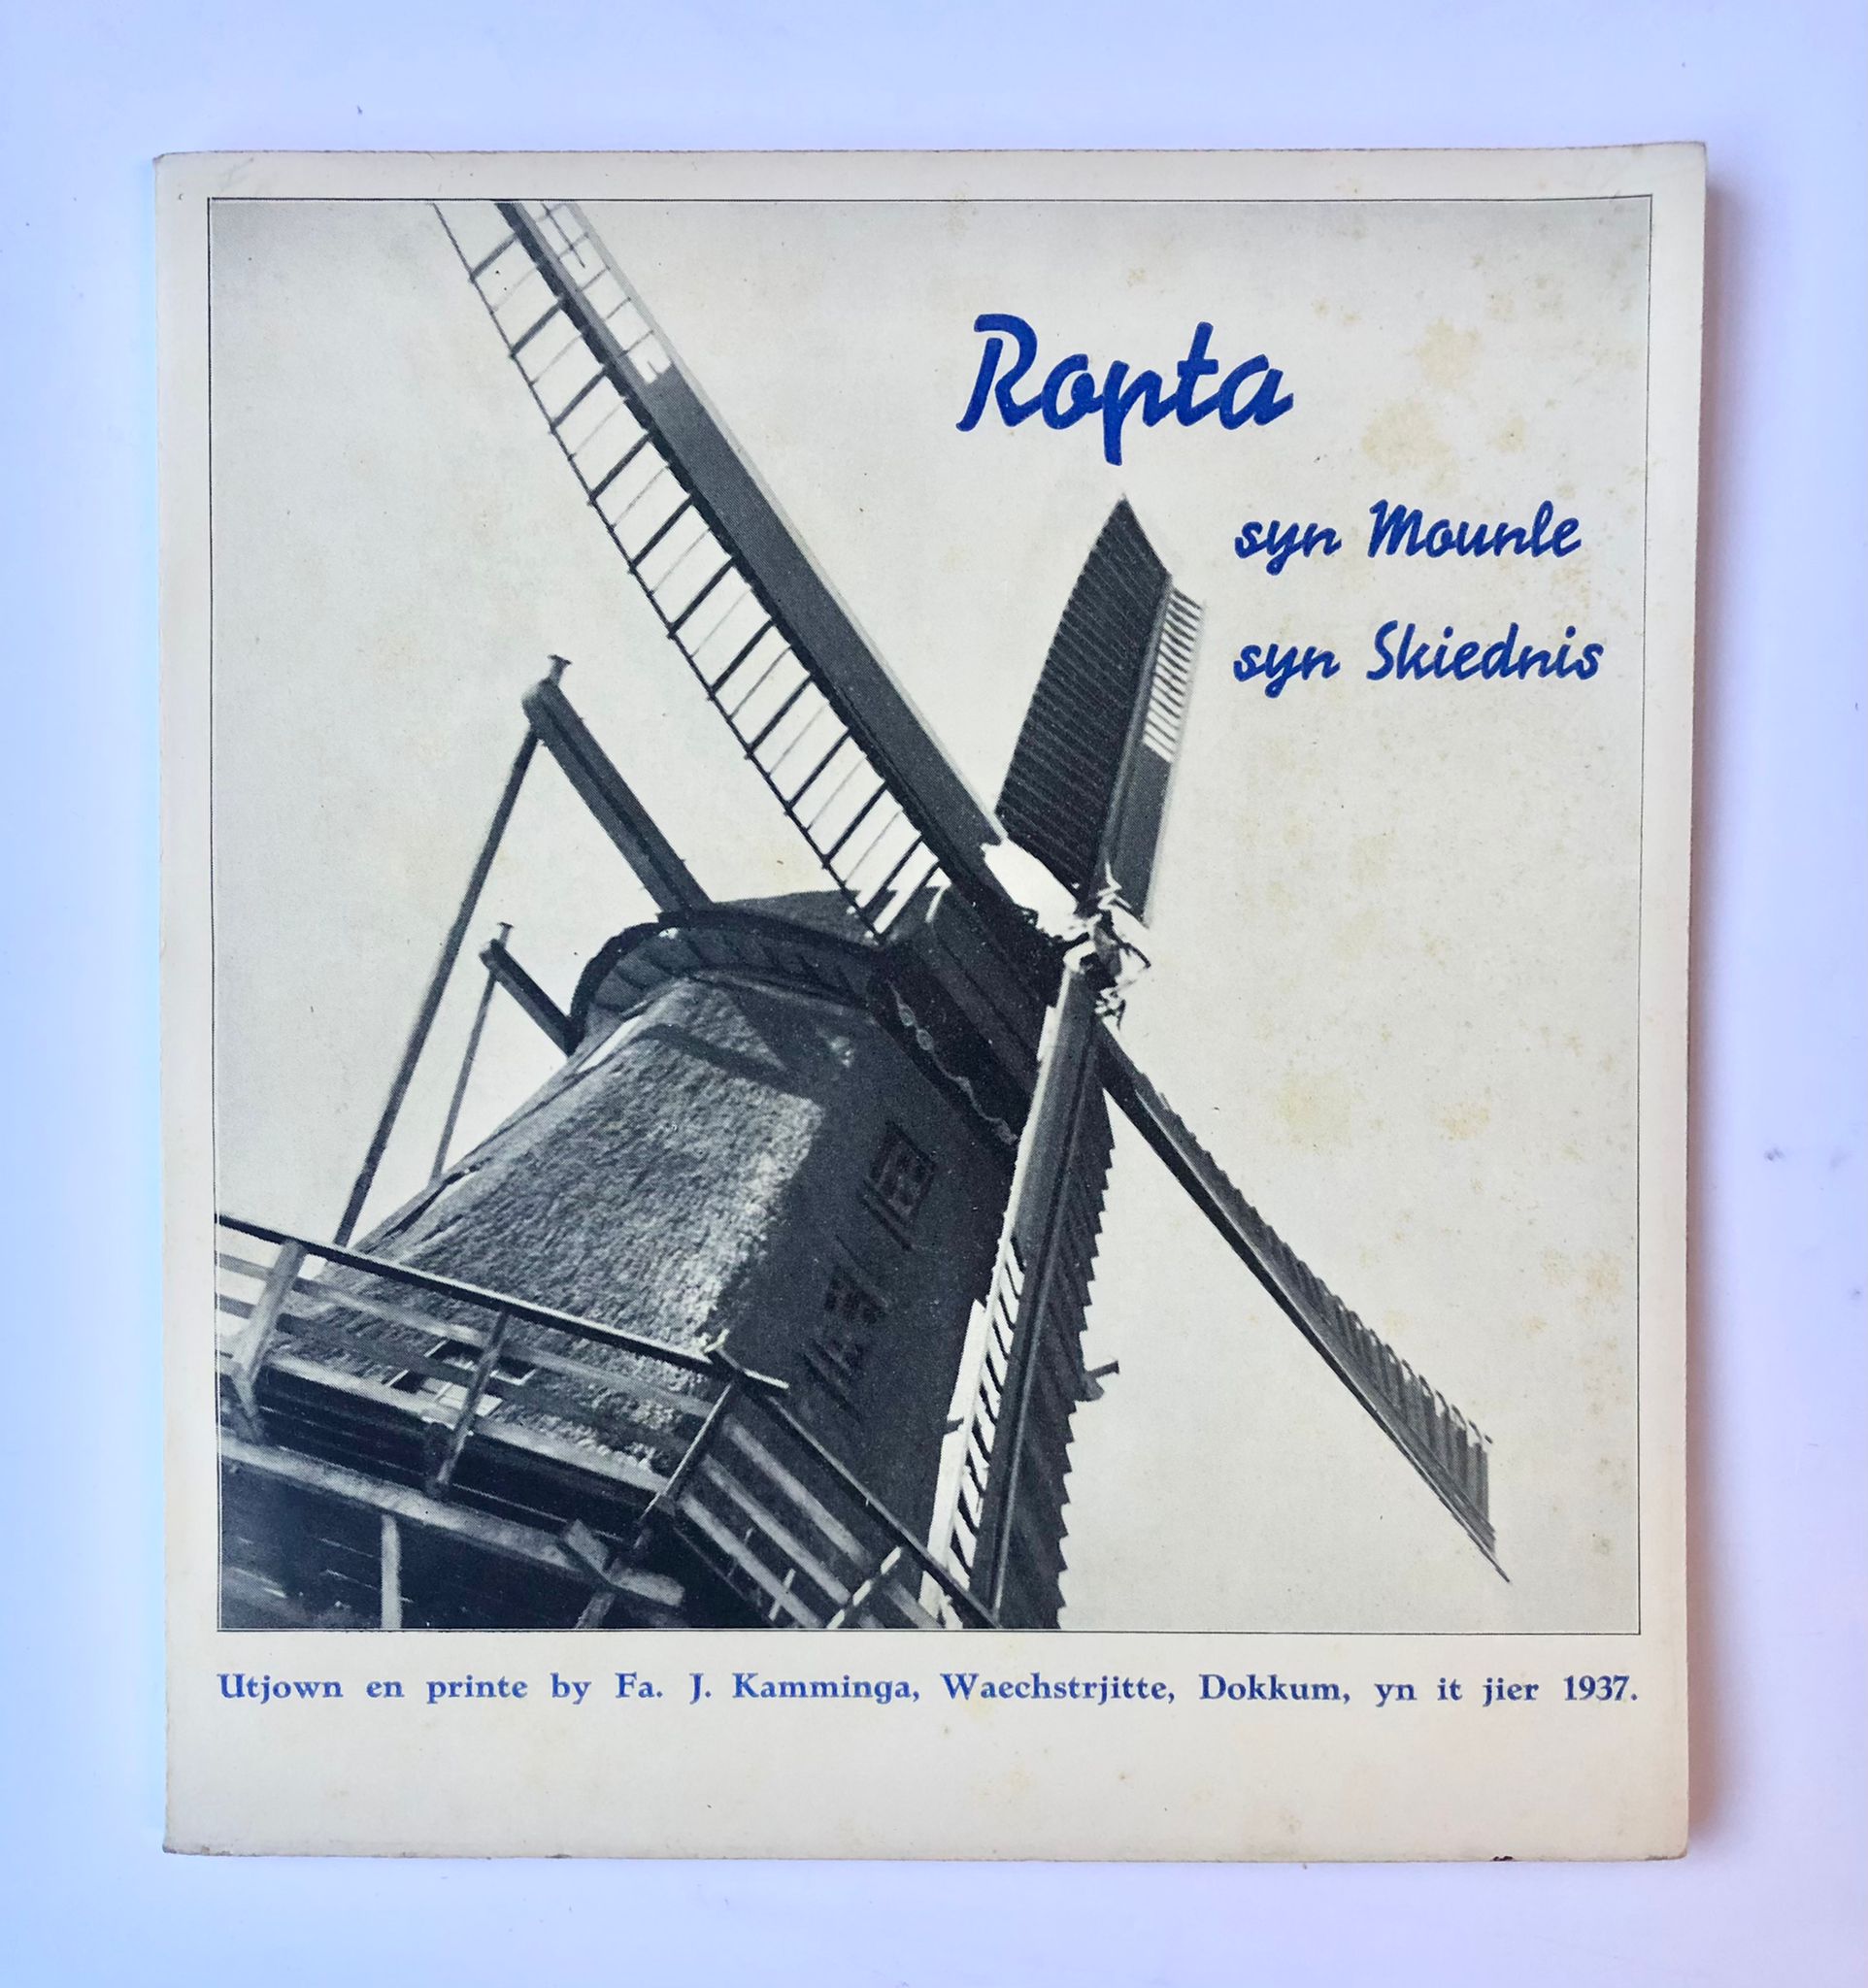 [Dokkum, Mill] Ropta : syn mounle, syn skiednis, biskreaun fen A. M. Wybenga, 1836-1936, Utjown en printe by Fa. J. Kamminga, Dokkum, 1937, 30 pp.